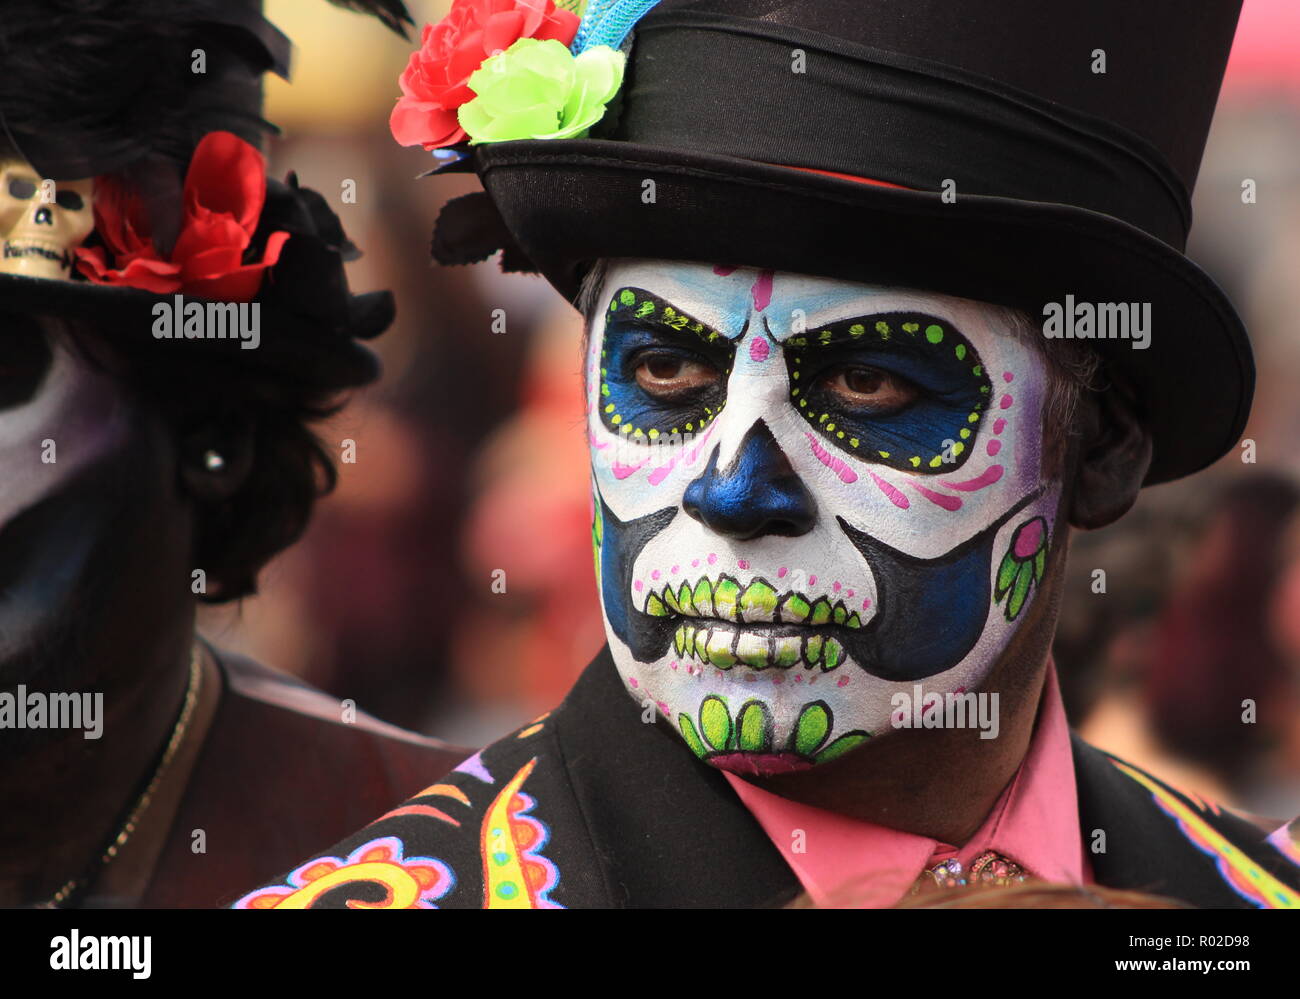 Mann mit schönen Sugar Skull Make-up am Tag der Toten Feier Stockfotografie  - Alamy